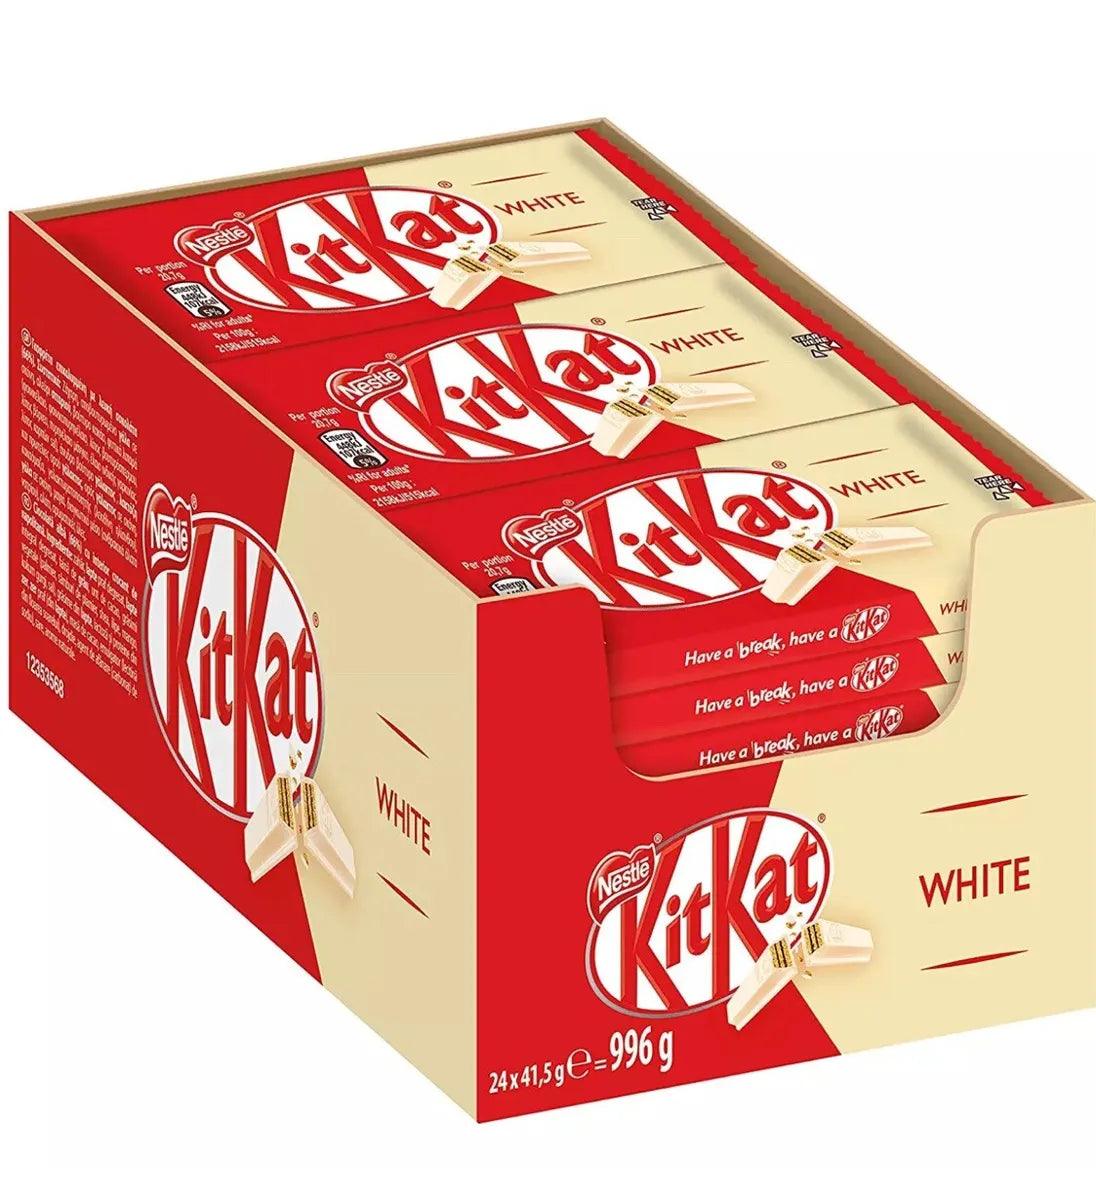 Kit Kat White 4-Finger Bars - Box of 24 | Chocolate Bars - Vending Superstore